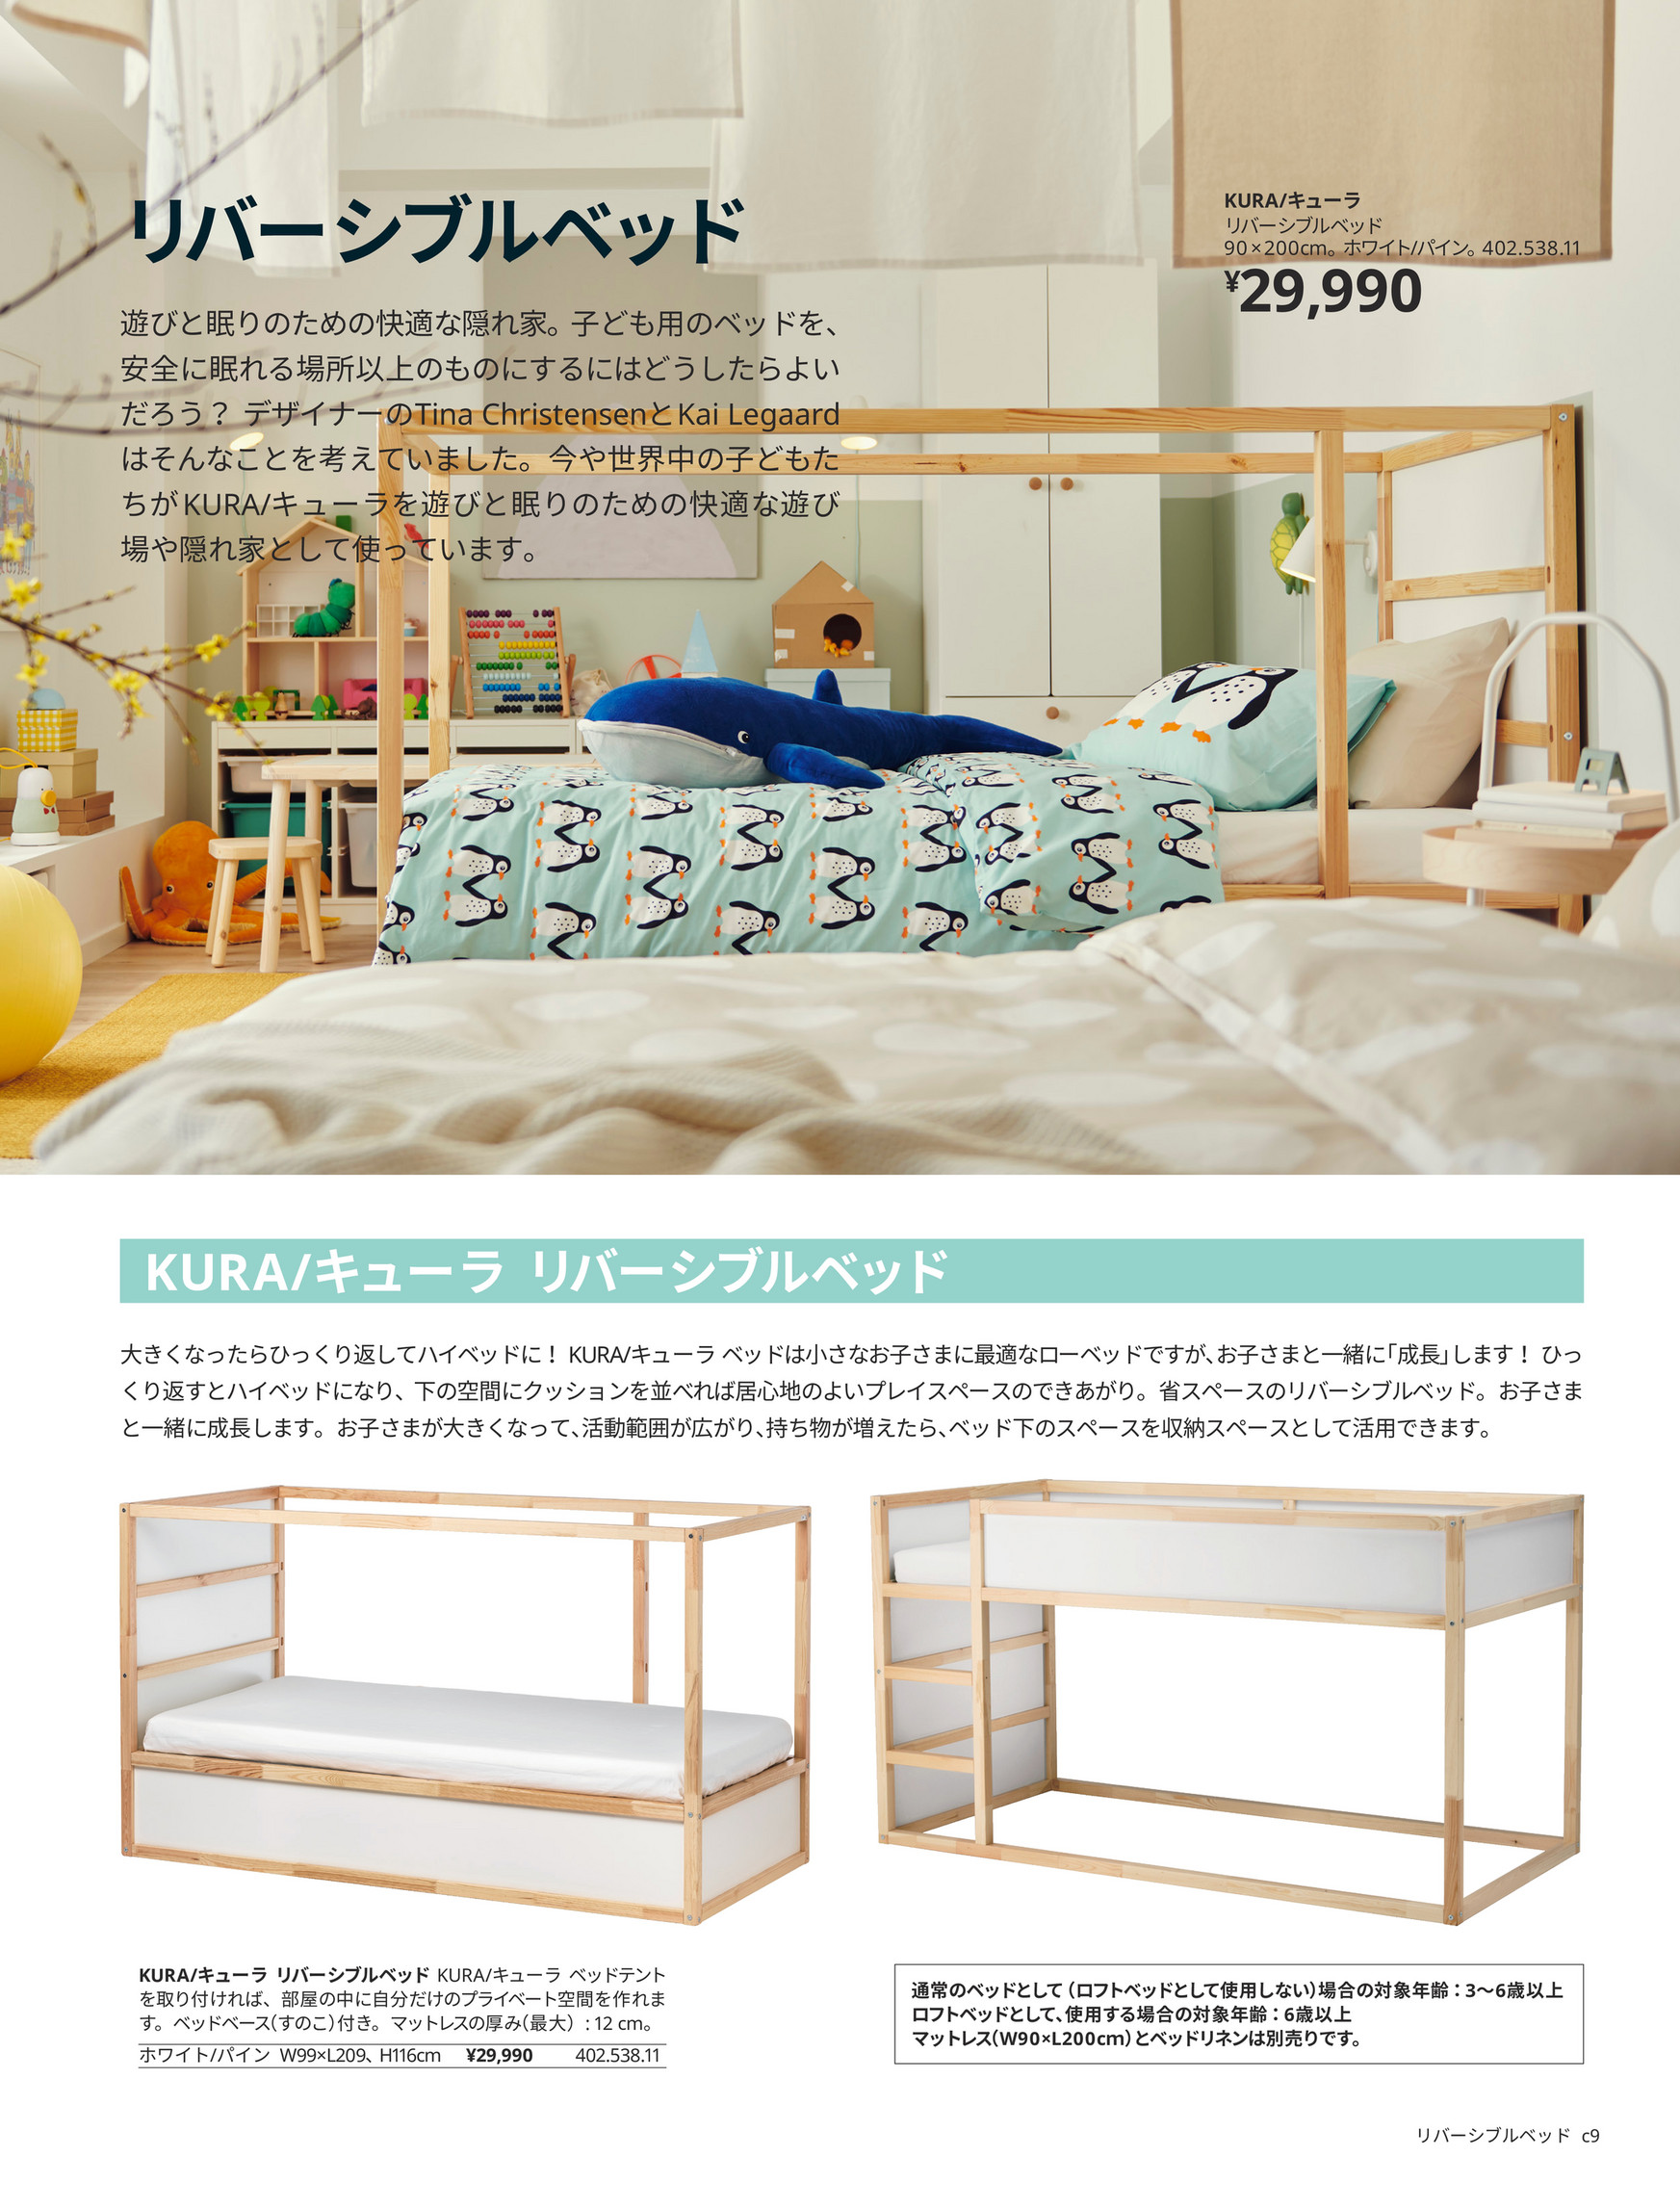 IKEA 赤ちゃんと子どもの眠りのカタログ - ページ 8-9